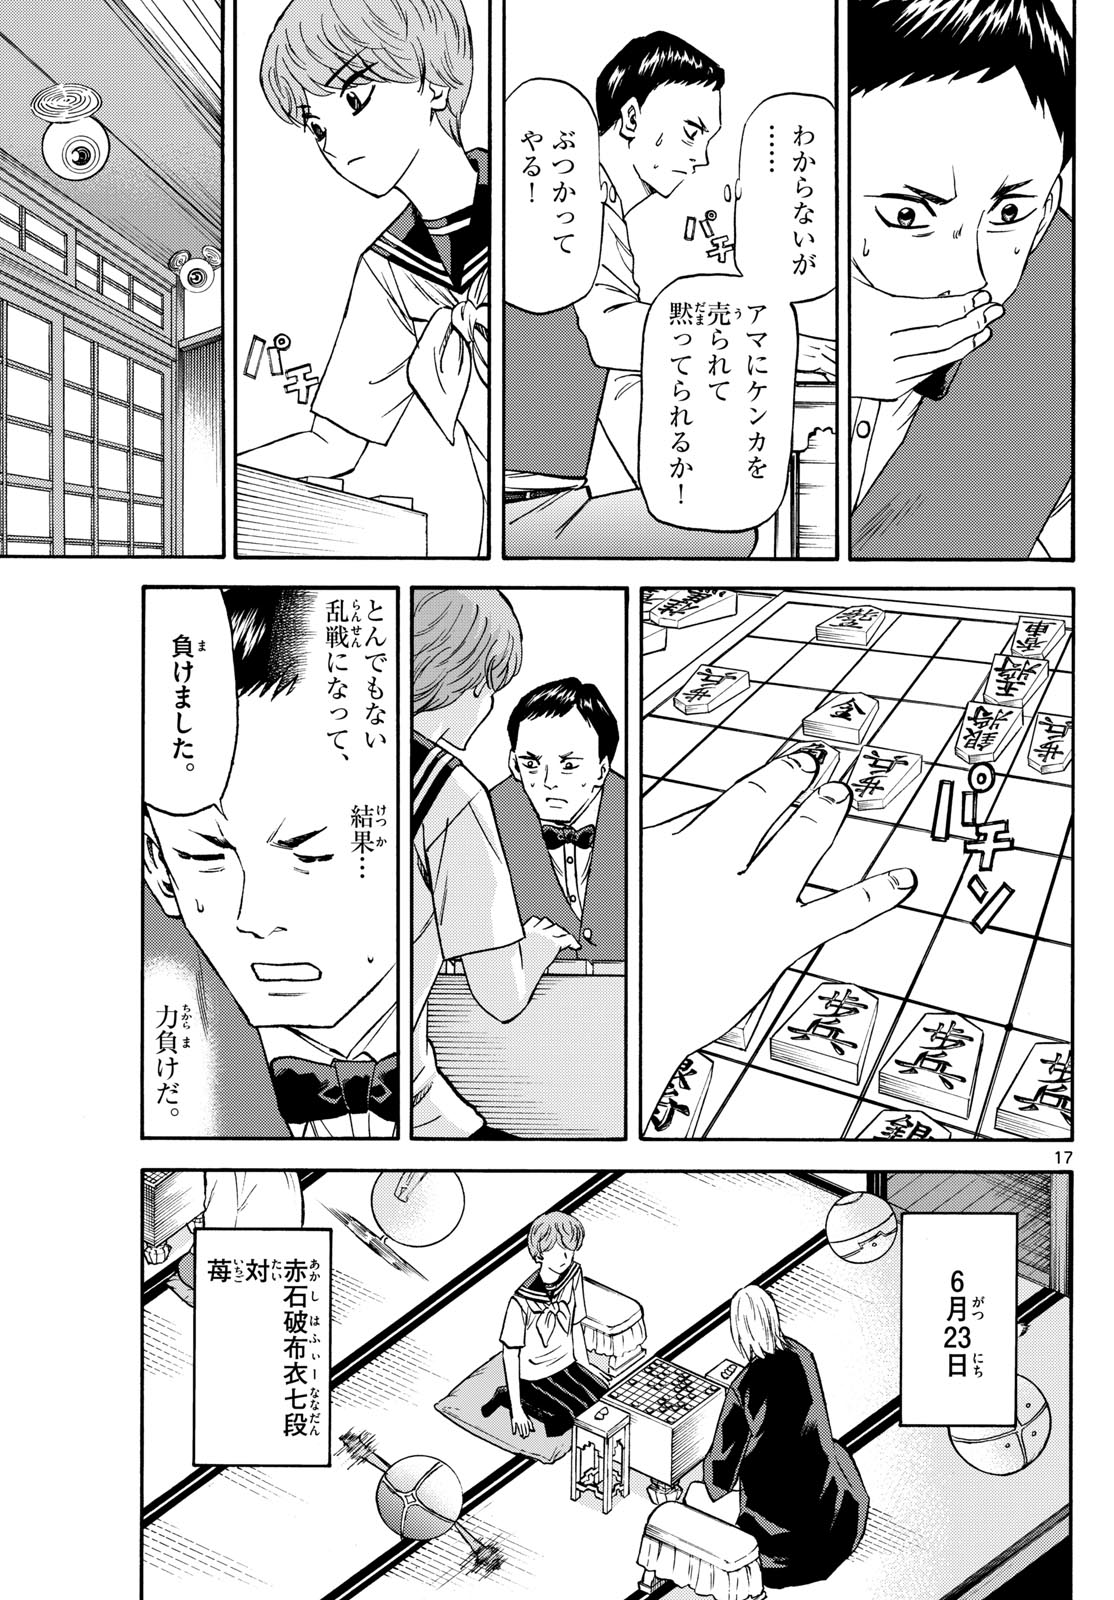 Tatsu to Ichigo - Chapter 190 - Page 17